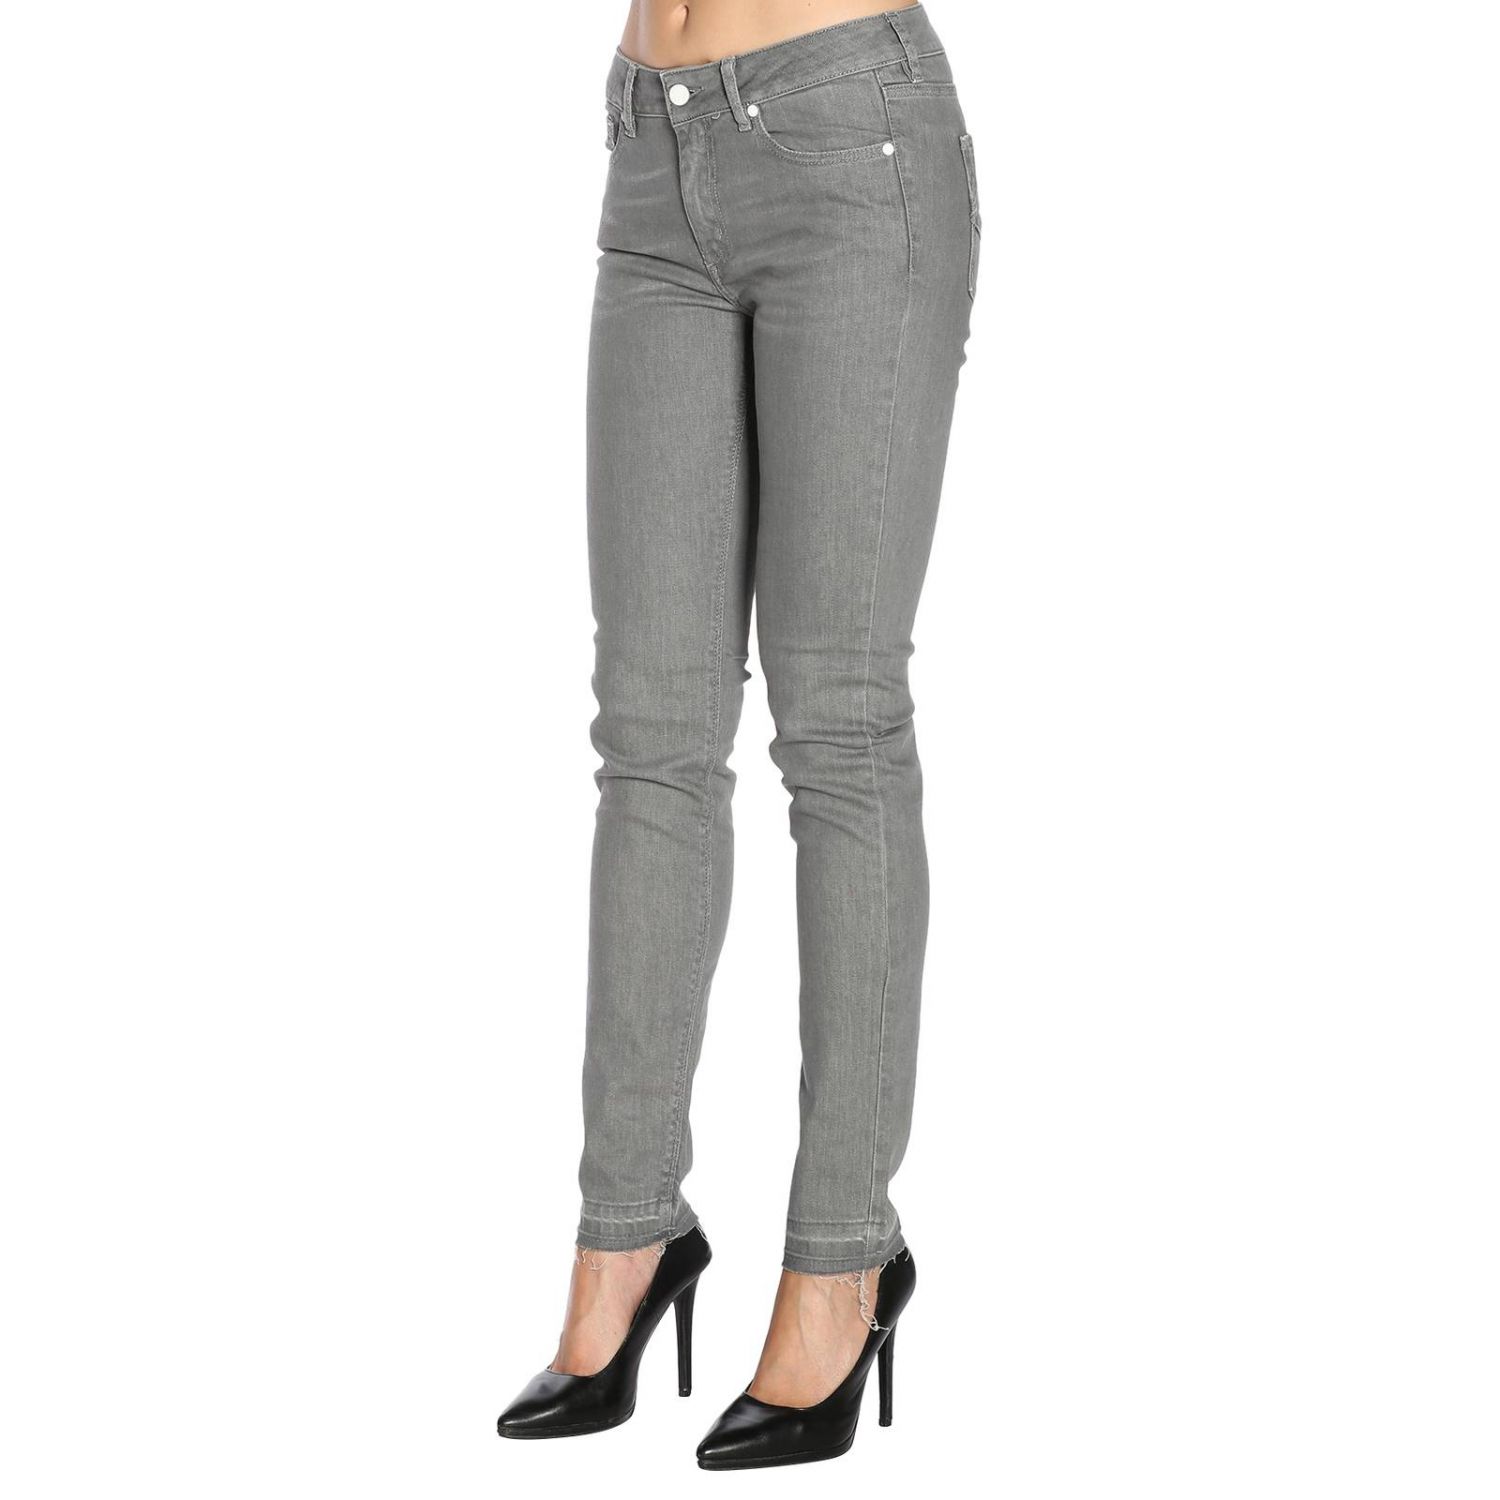 ZADIG & VOLTAIRE: Jeans women | Jeans Zadig & Voltaire Women Grey ...